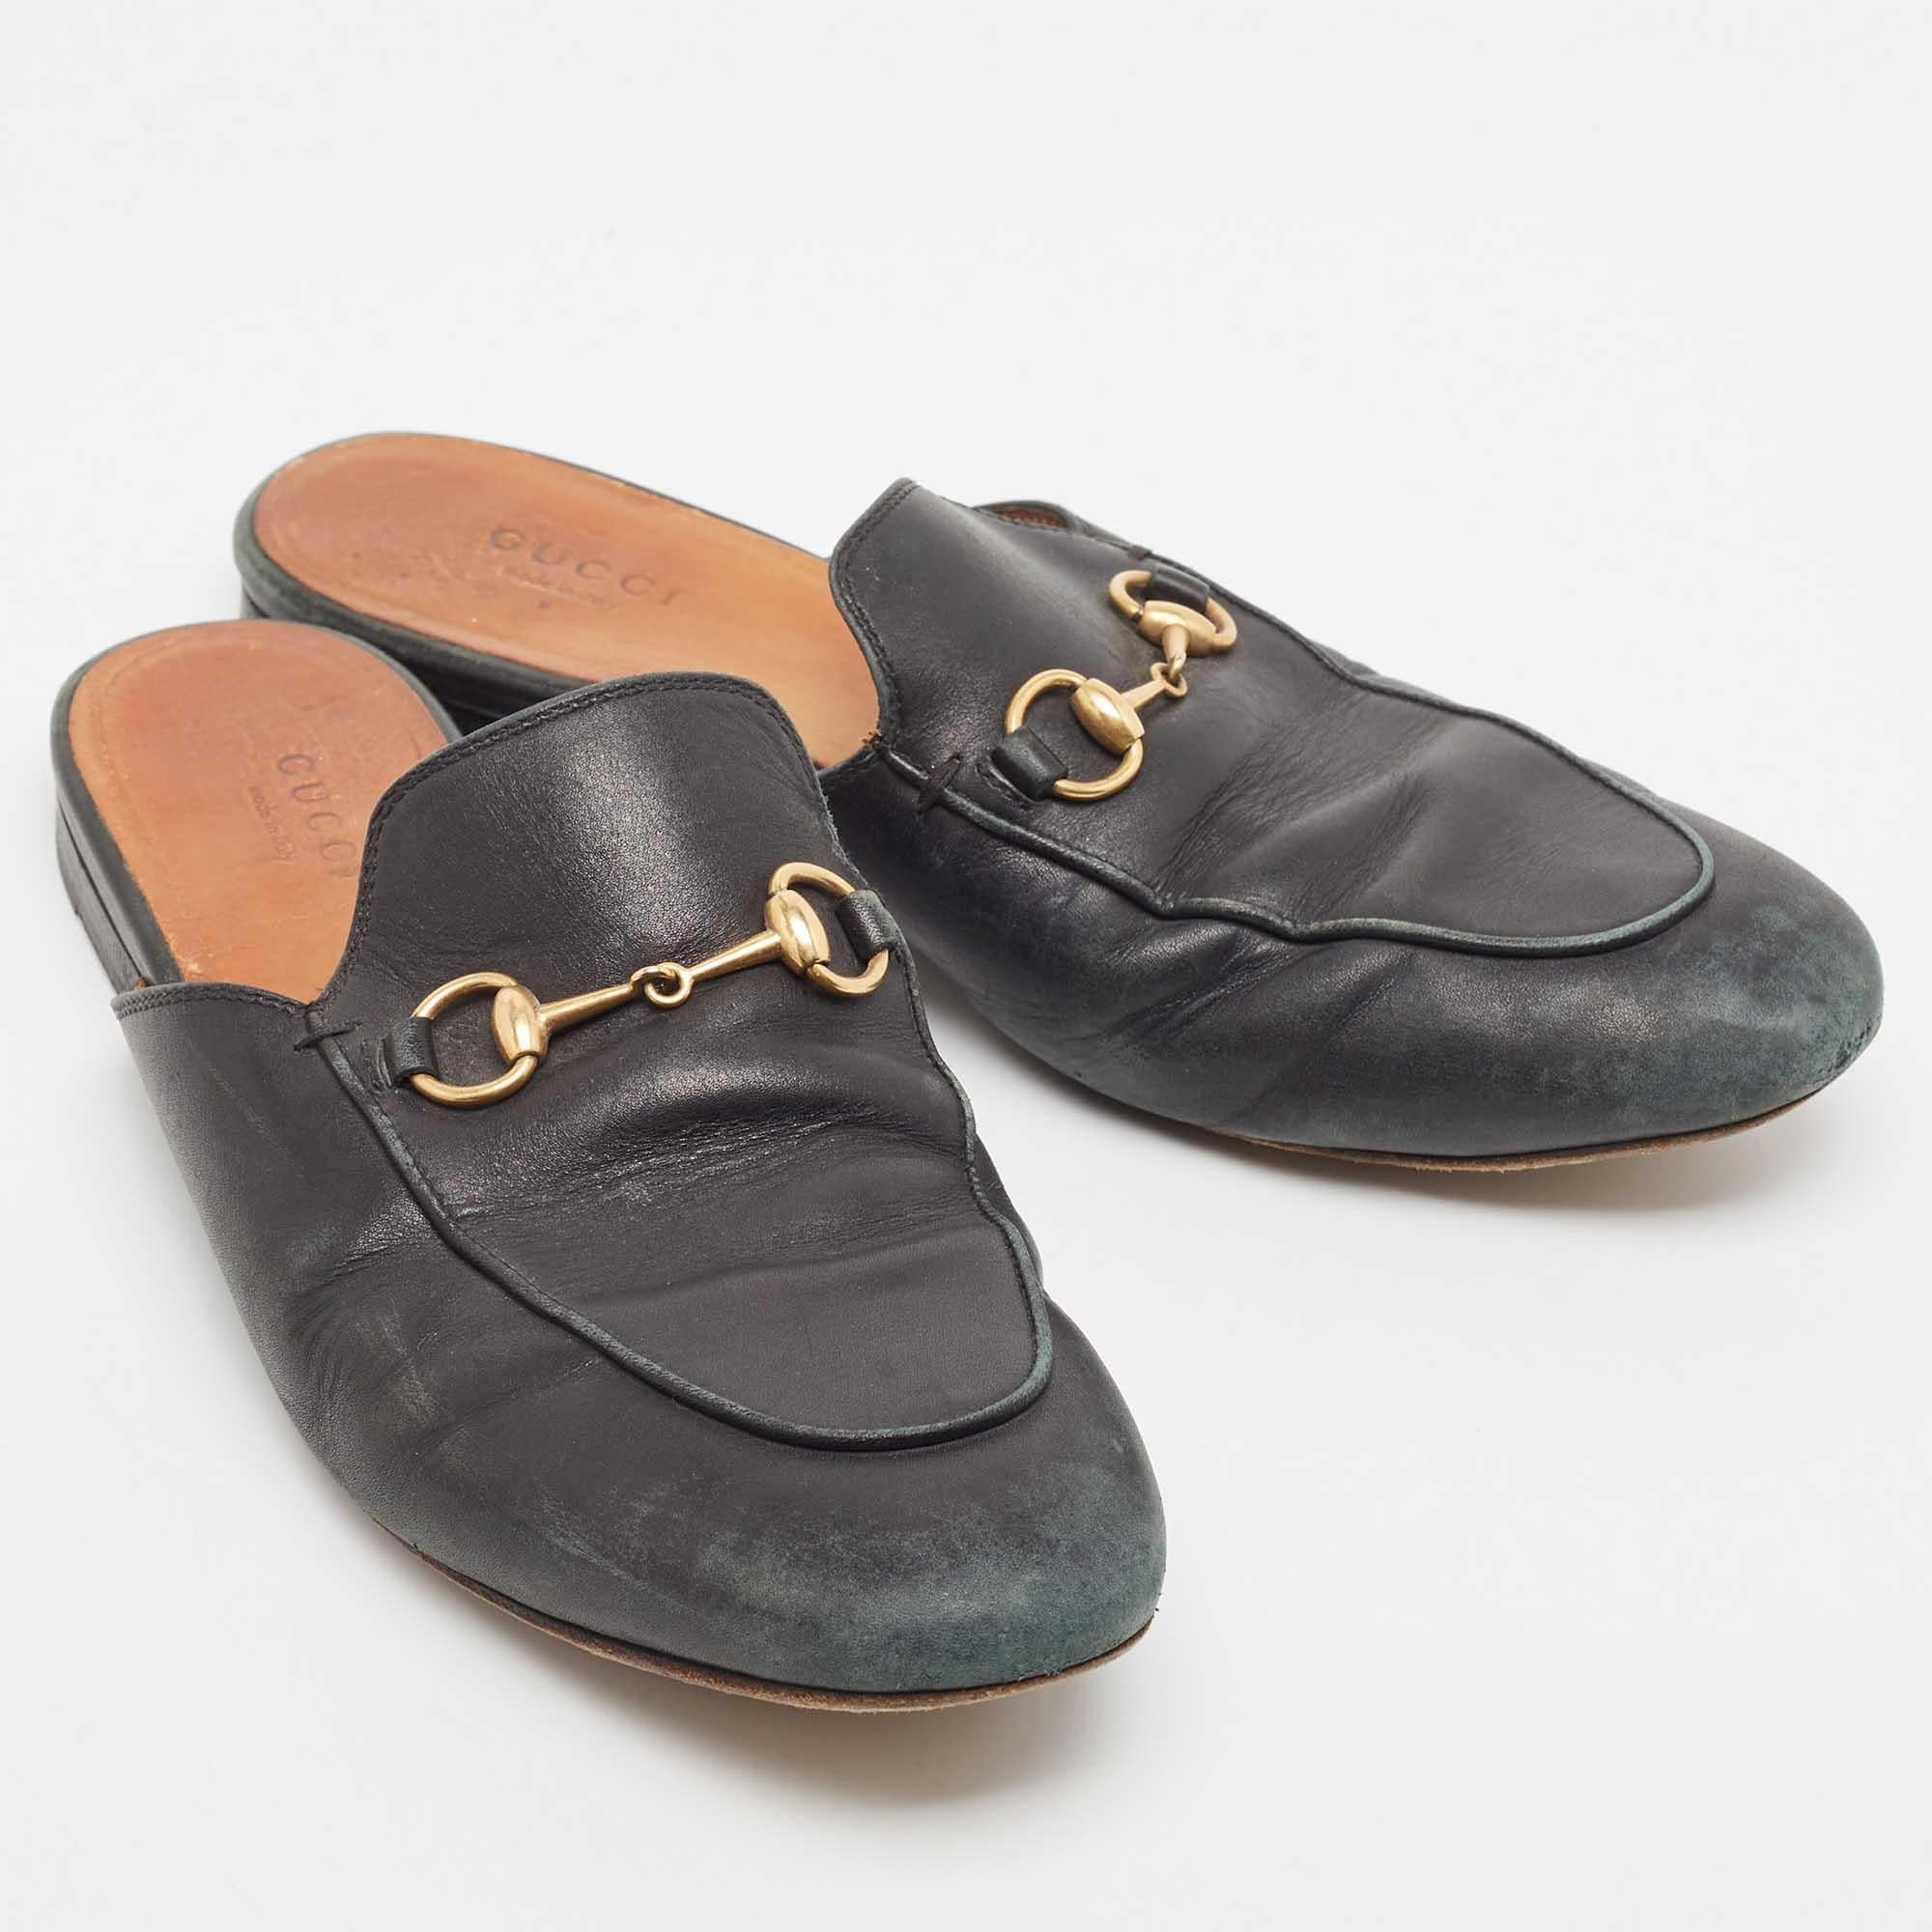 Gucci Black Leather Princetown Mules Size 38.5 a In Fair Condition For Sale In Dubai, Al Qouz 2